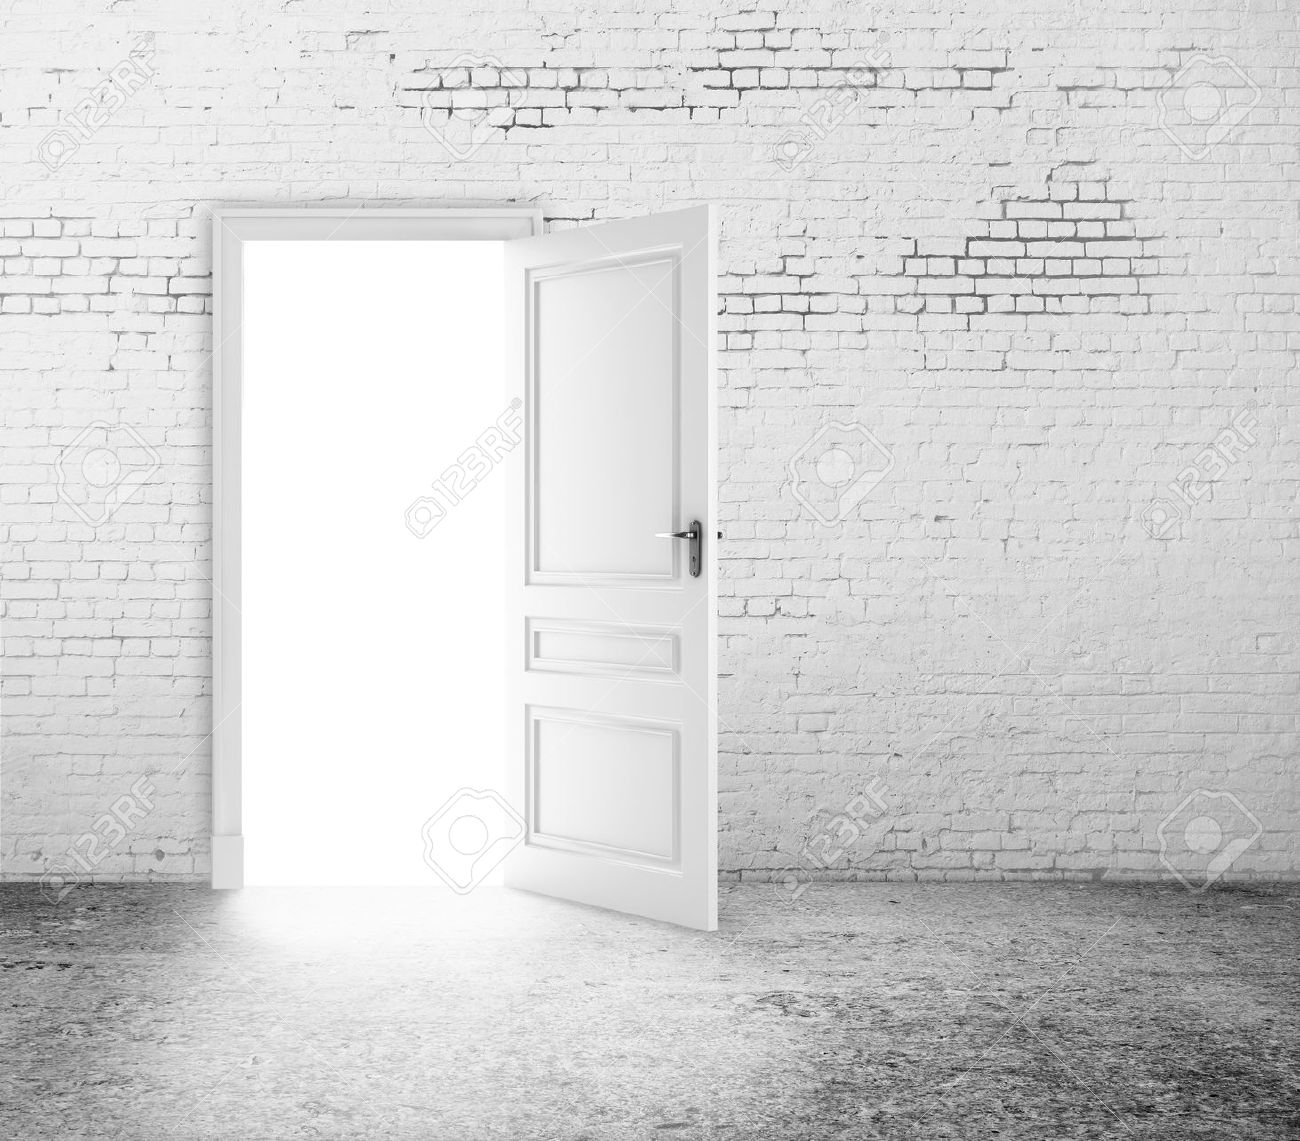 open-door-in-white-brick-wall-Stock-Photo-doors